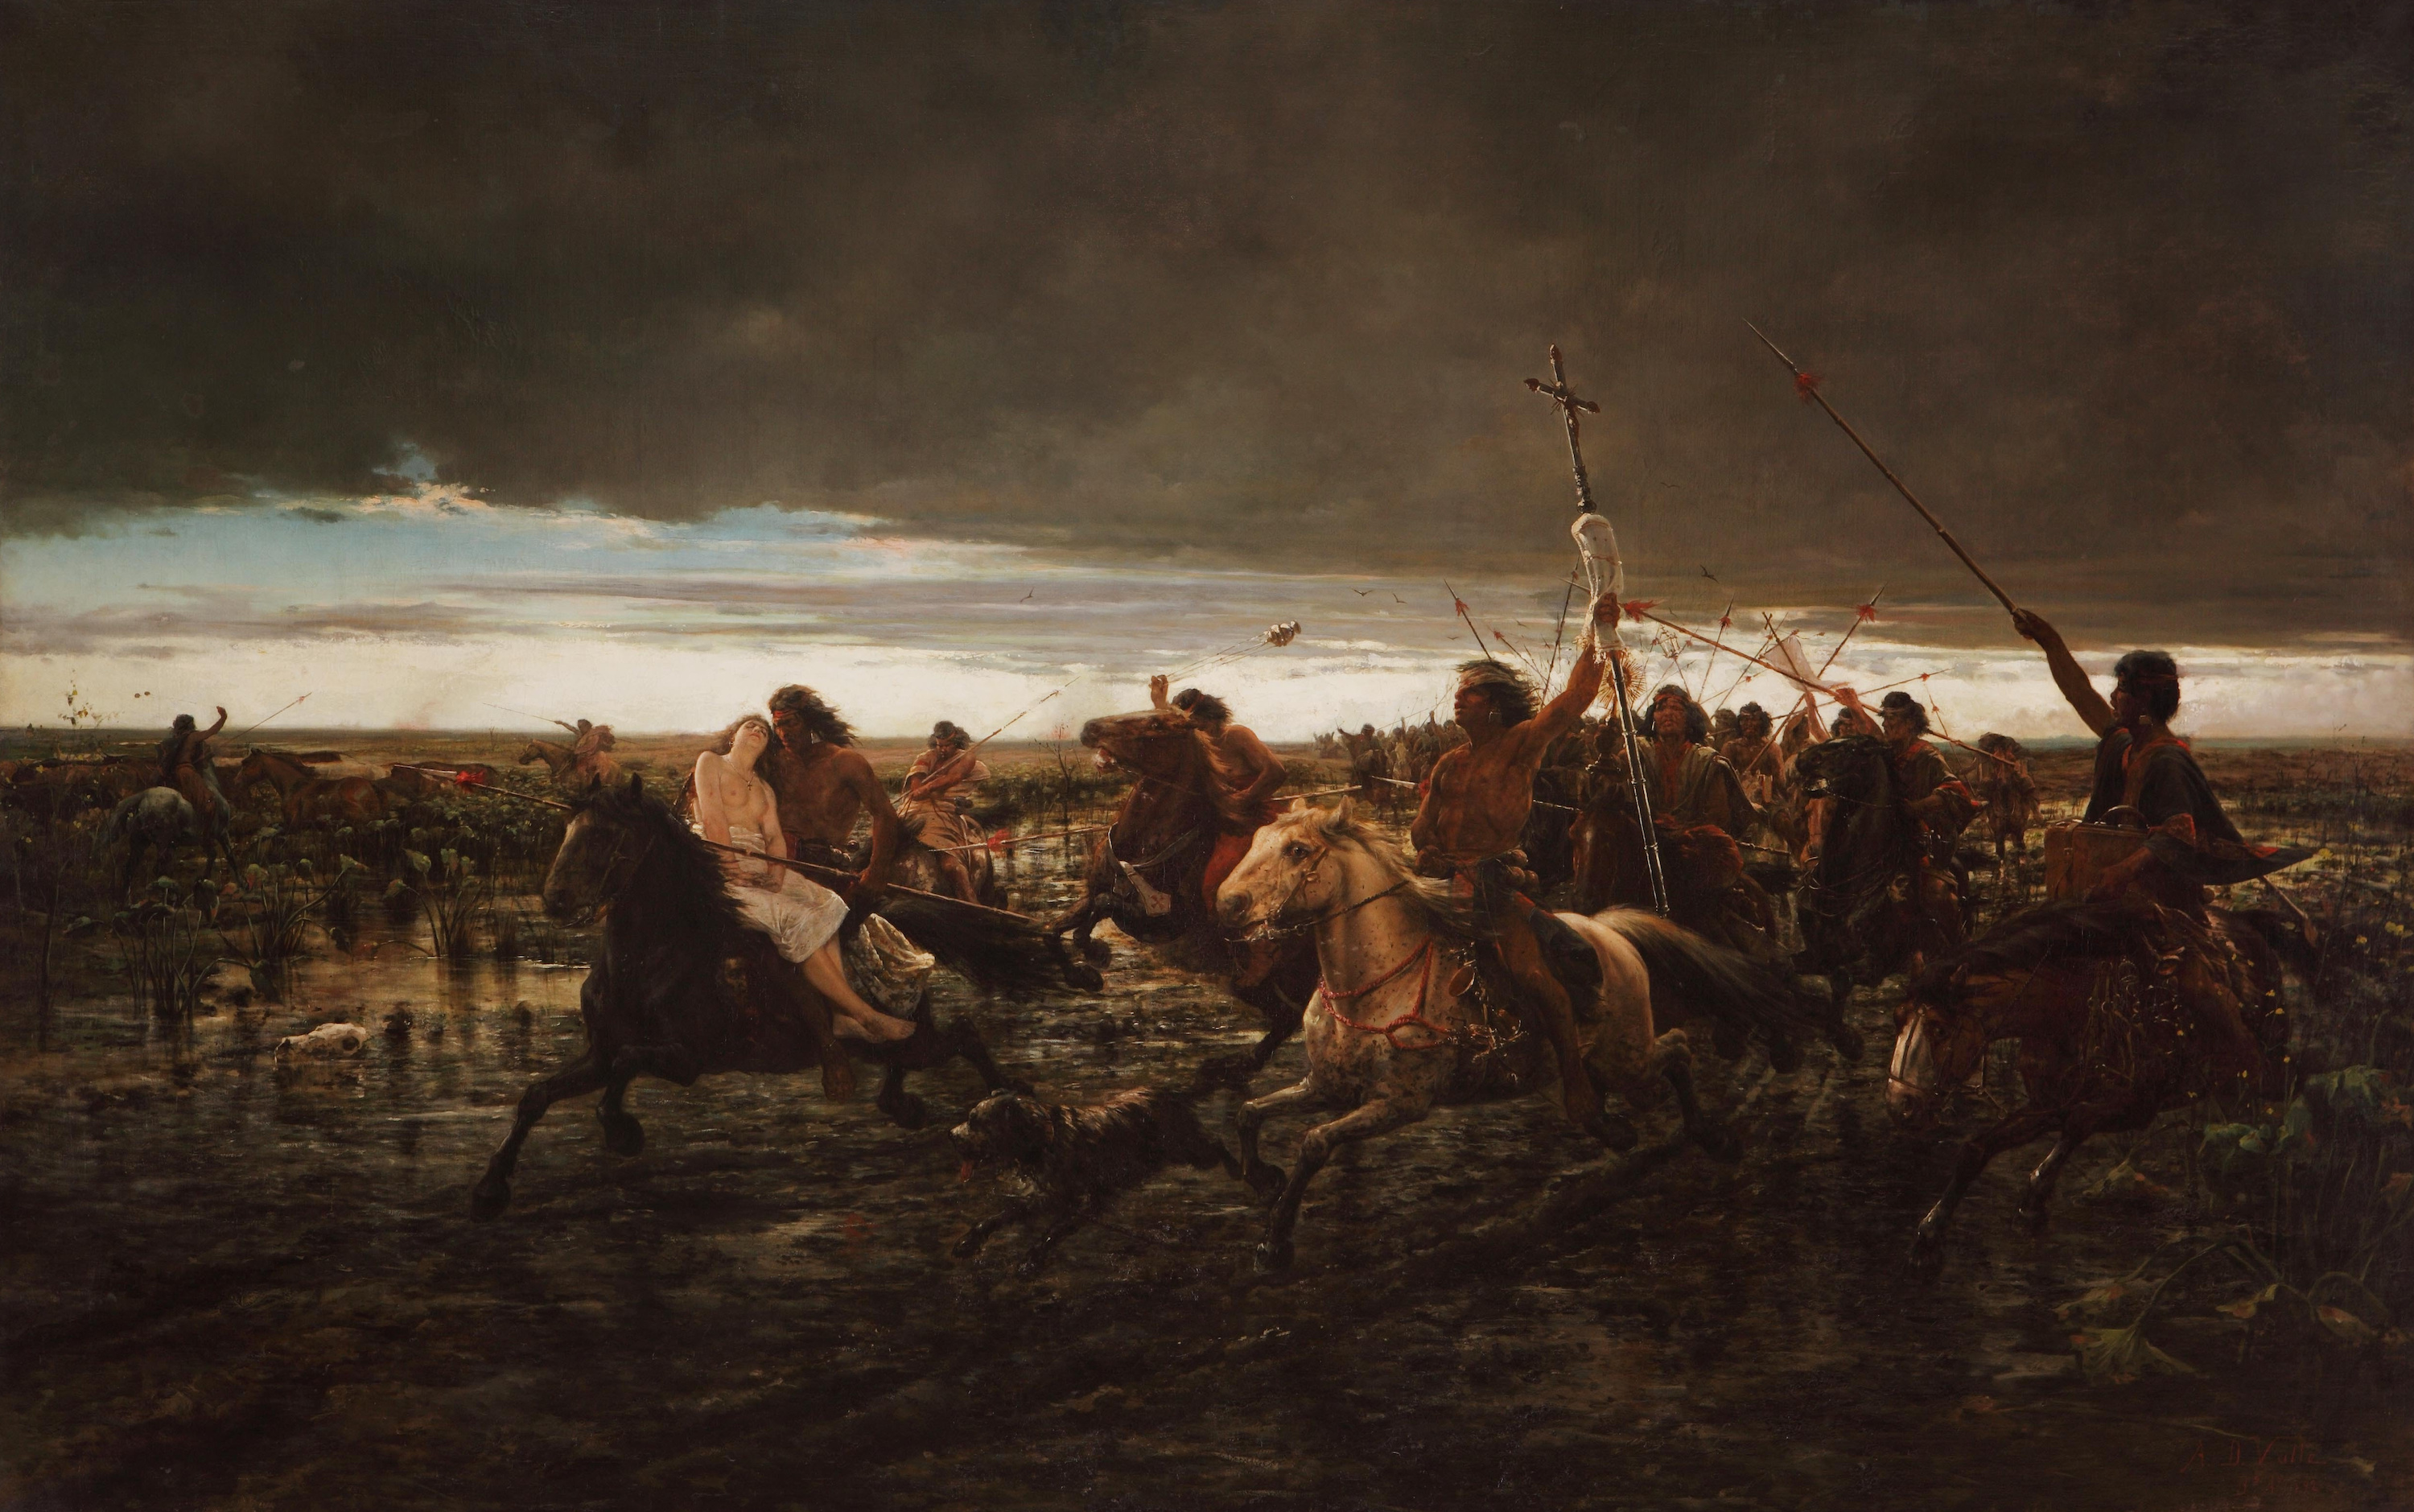 بازگشت مالون (بازگشت مهاجمان)  by Ángel della Valle - 1892 